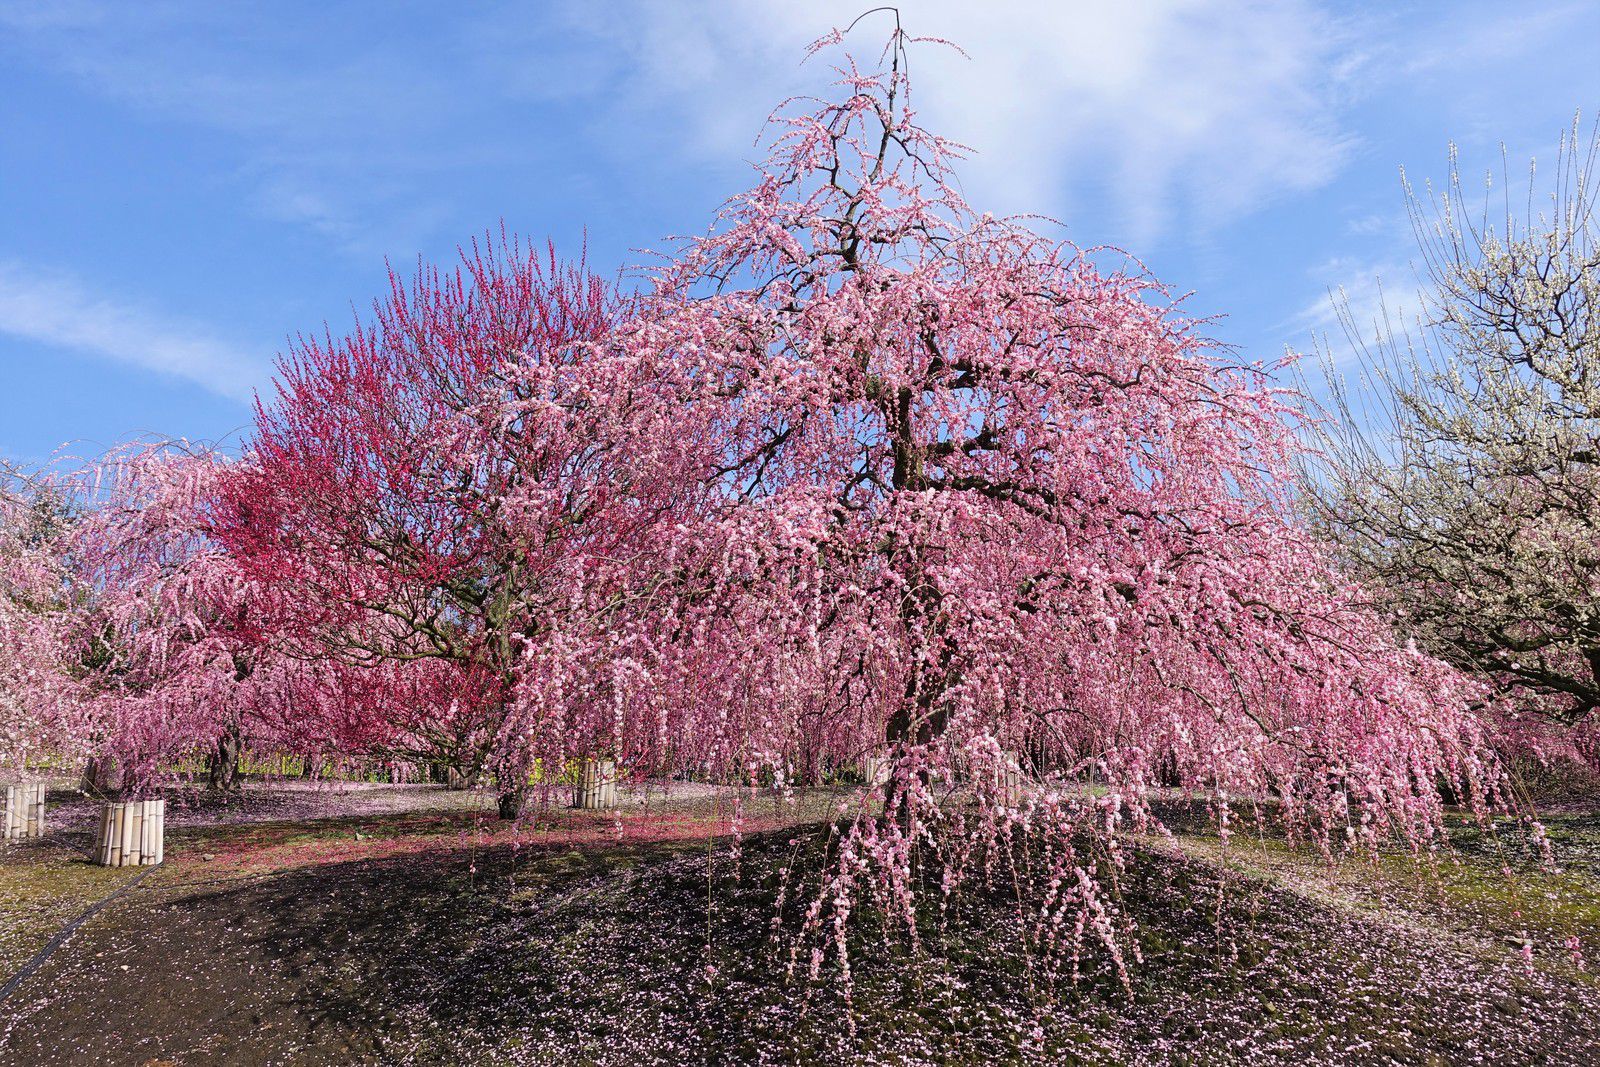 Festival des pruniers 2020 : Suzuka Forest Garden